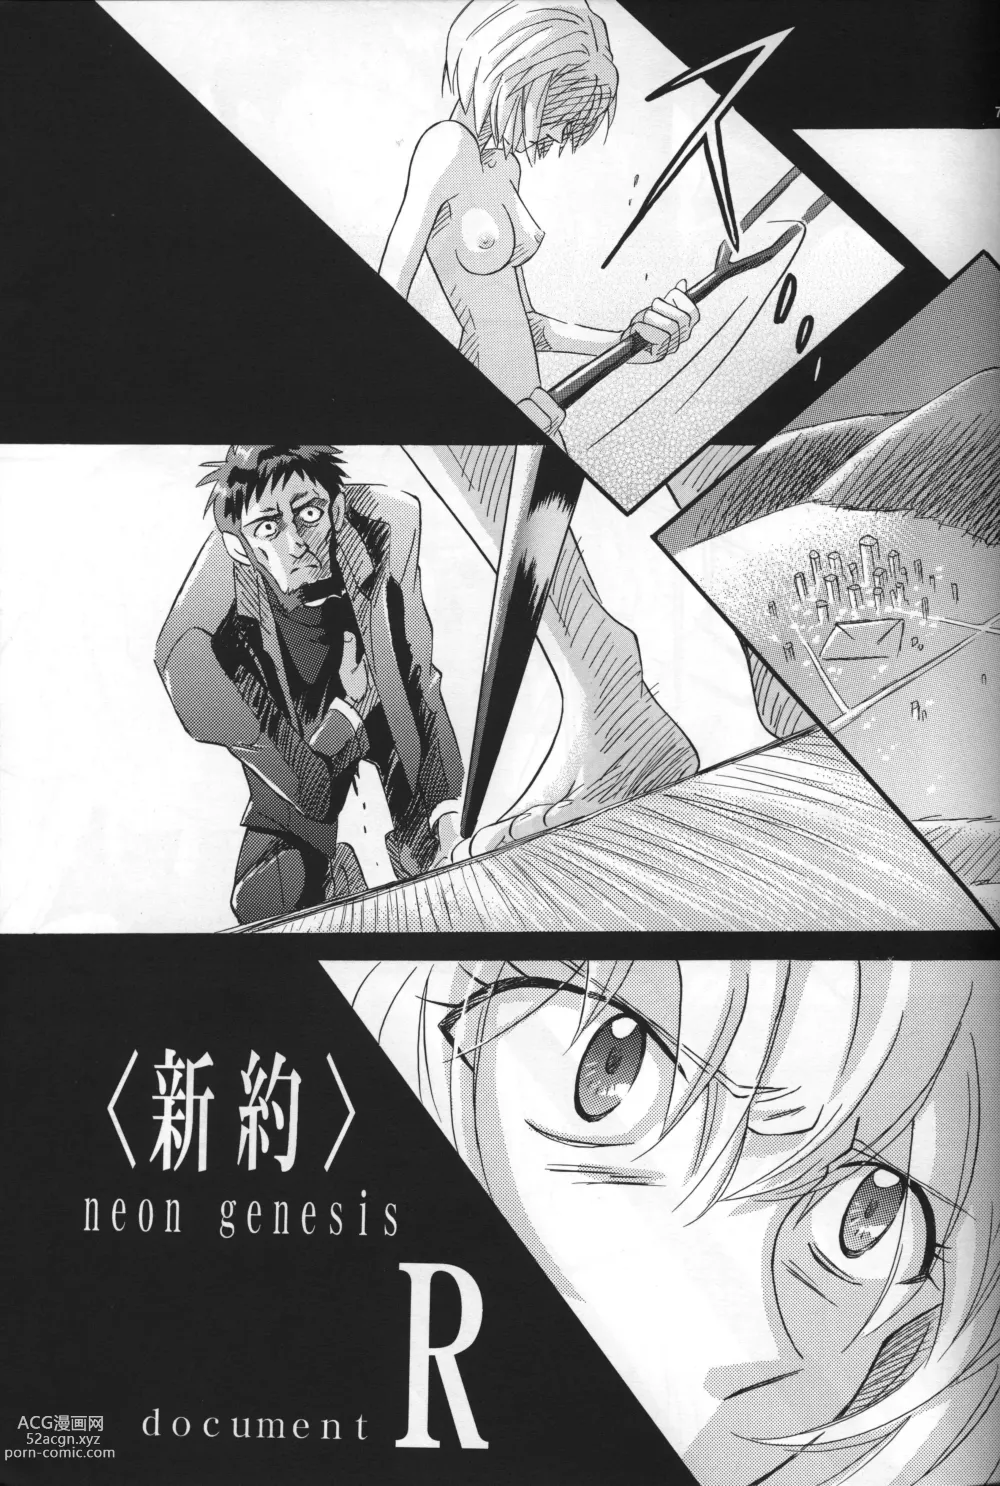 Page 8 of doujinshi <Shinyaku> NEON GENESIS document R